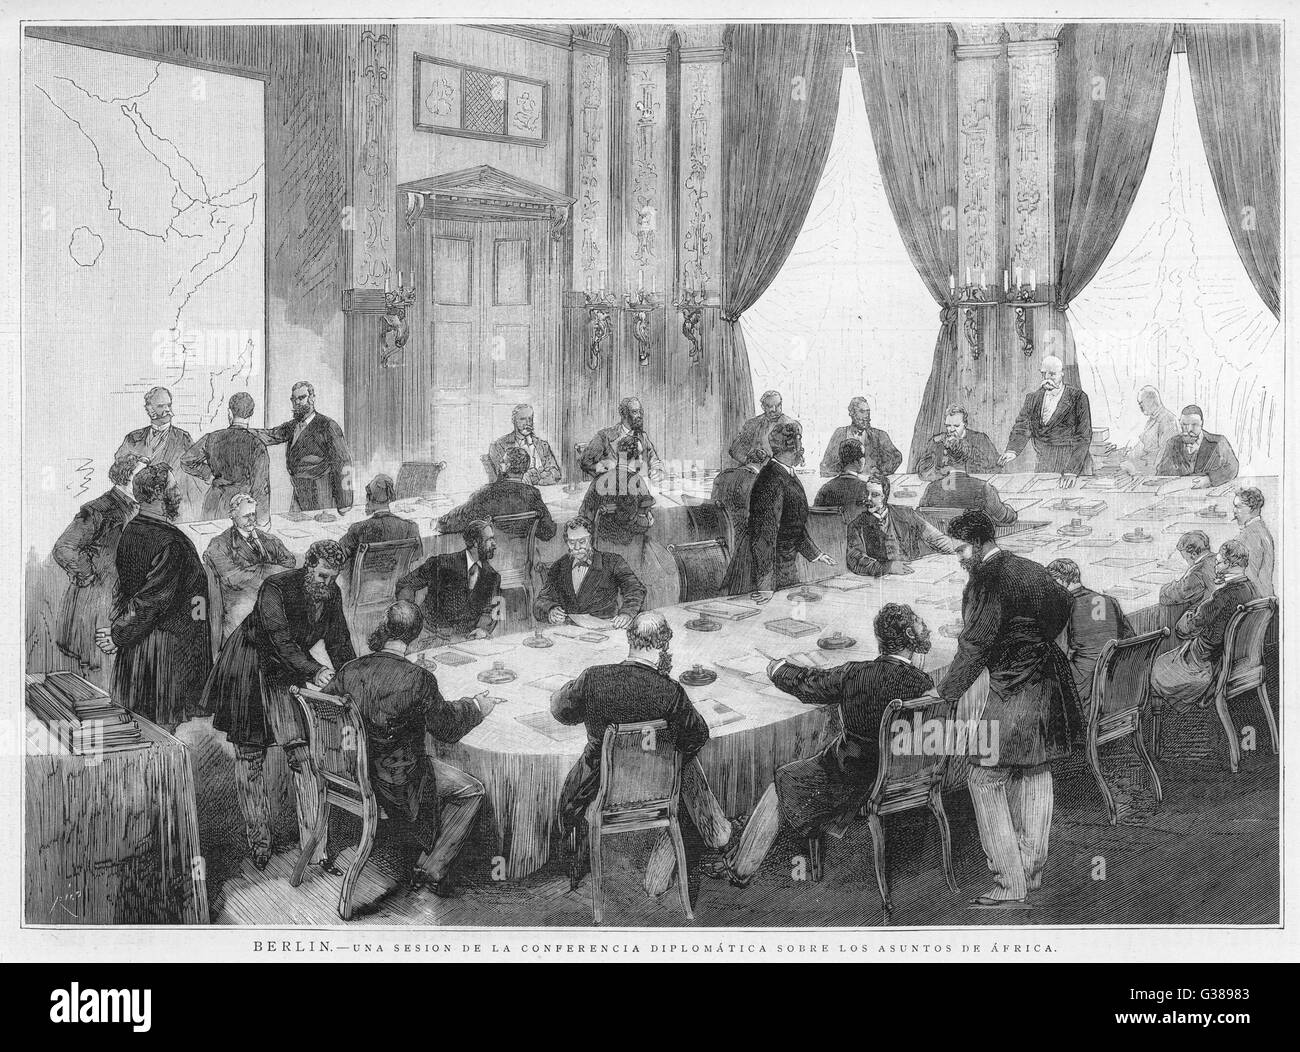 Berliner Konferenz Bismarck führt den Vorsitz in einer diplomatischen Konferenz, Veranstaltungen in Afrika Datum zu diskutieren: Dezember 1884 Stockfoto